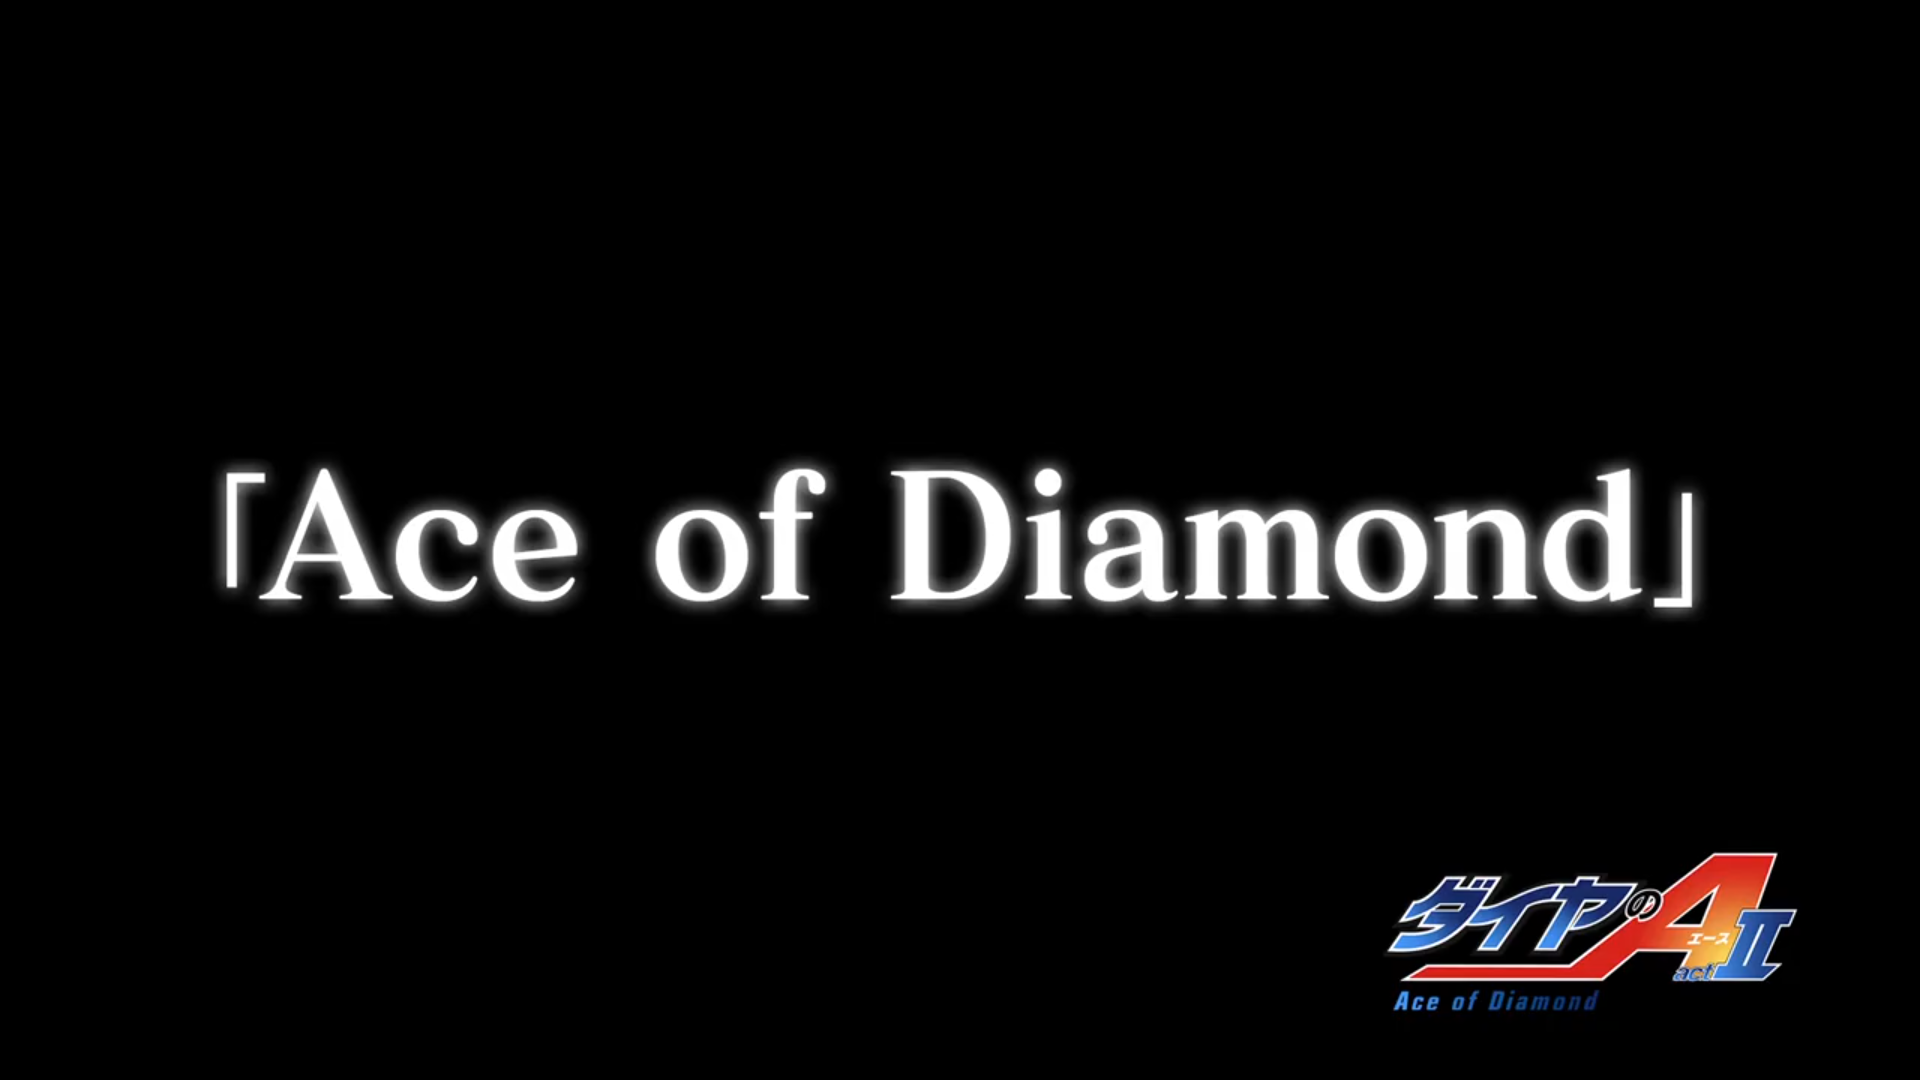 Ace of Diamond season 3: release date revealed 2 April 2019